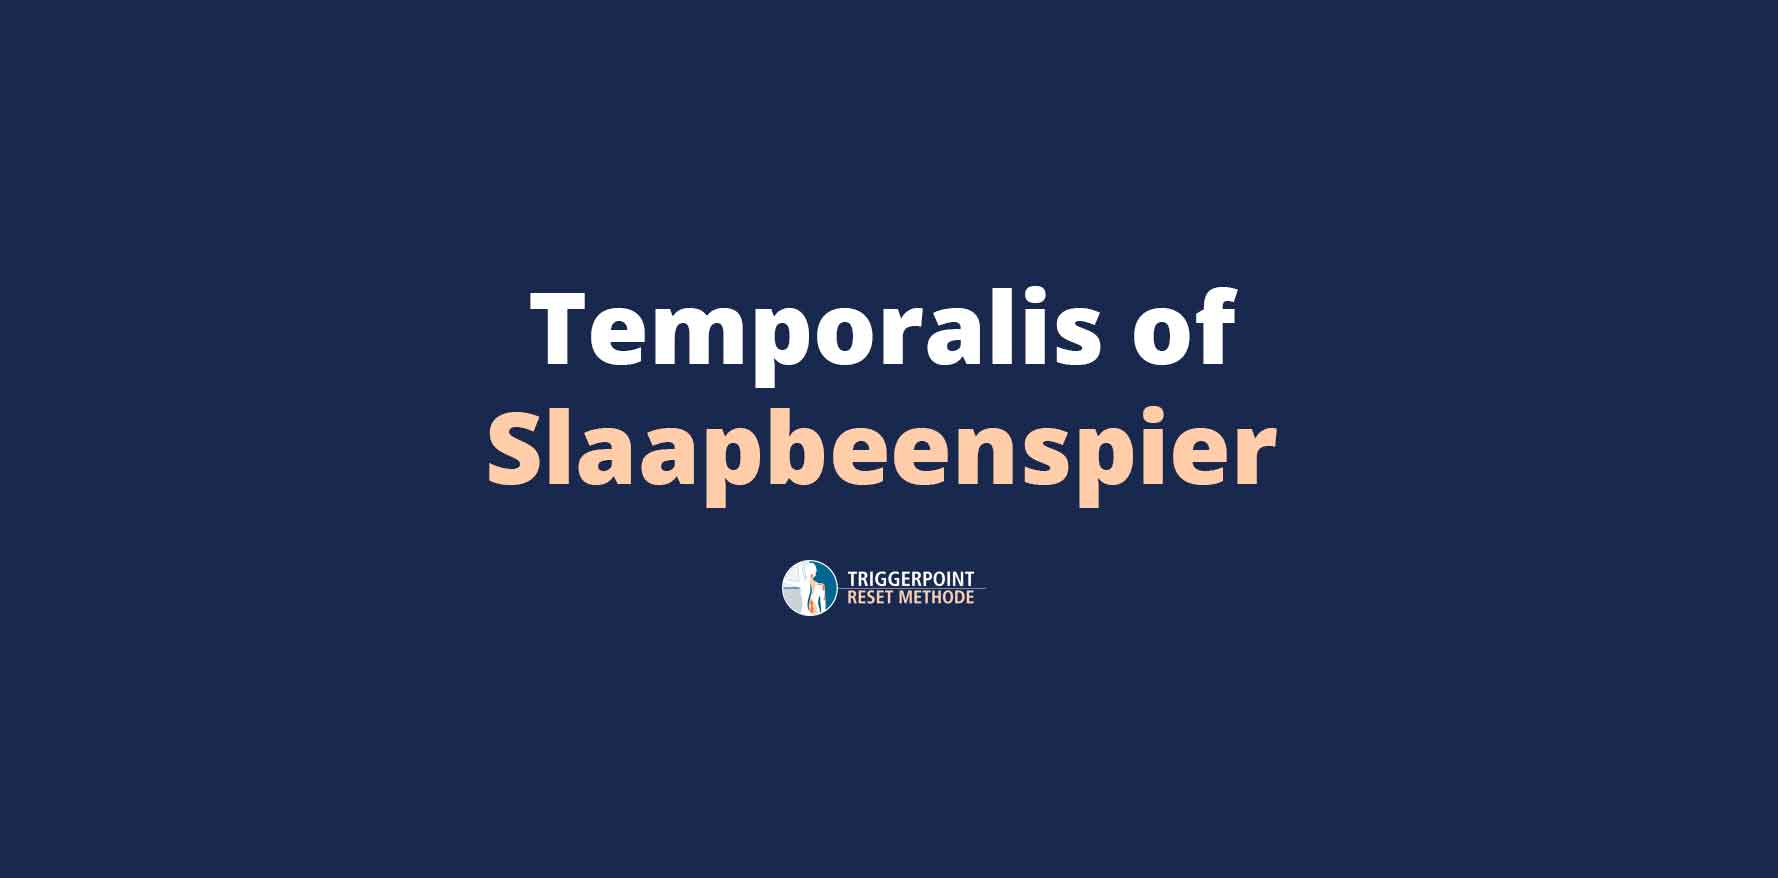 Slaapbeenspier of Temporalis